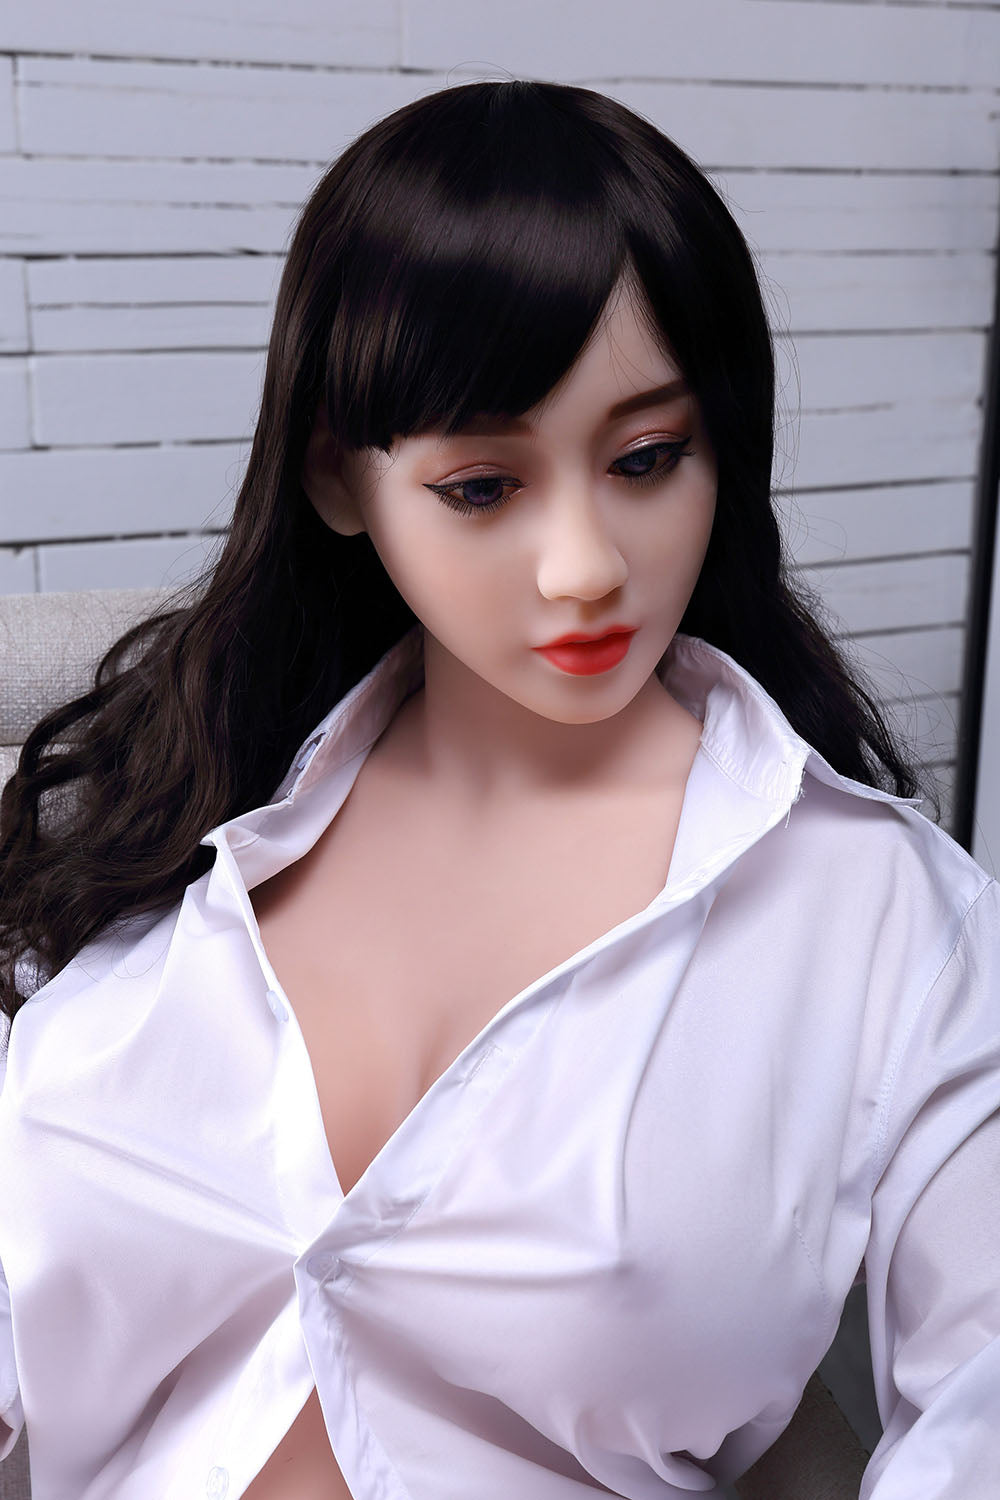 Vita: WM Asian Sex Doll - Sex Doll Queen